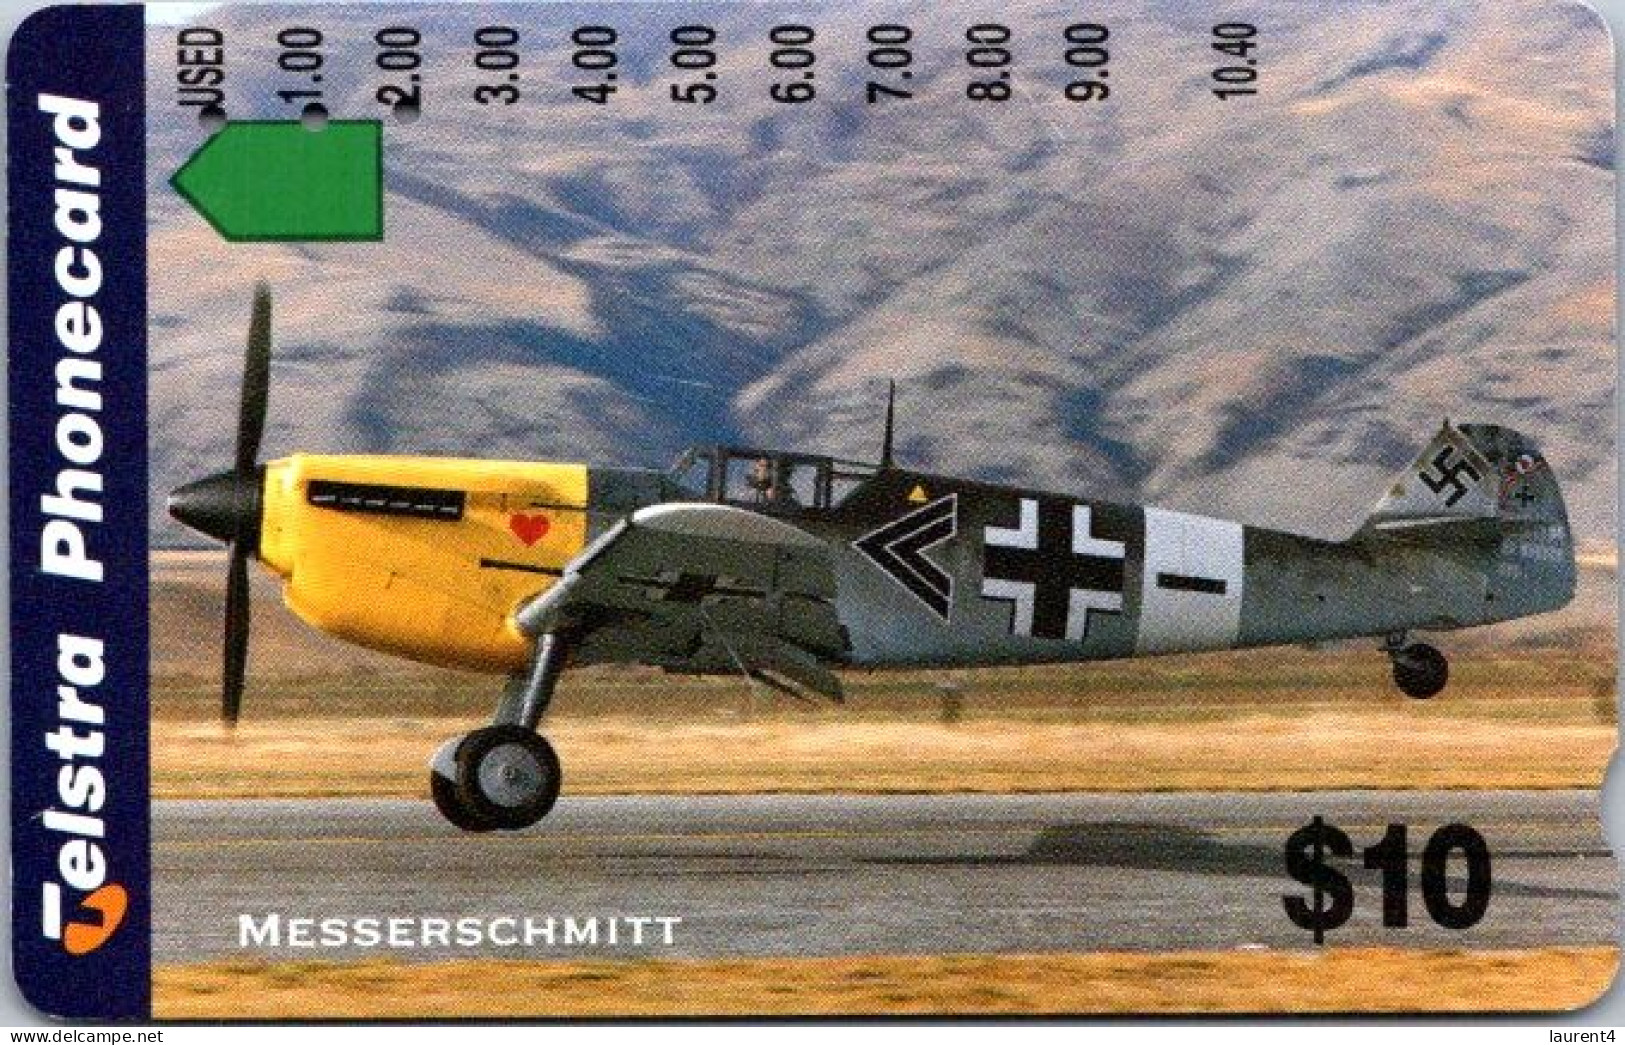 8-3-2024 (Phonecard) Messerchhmitt WWII Aircraft - $ 10.00 Phonecard - Carte De Téléphoone (1 Card) - Australie